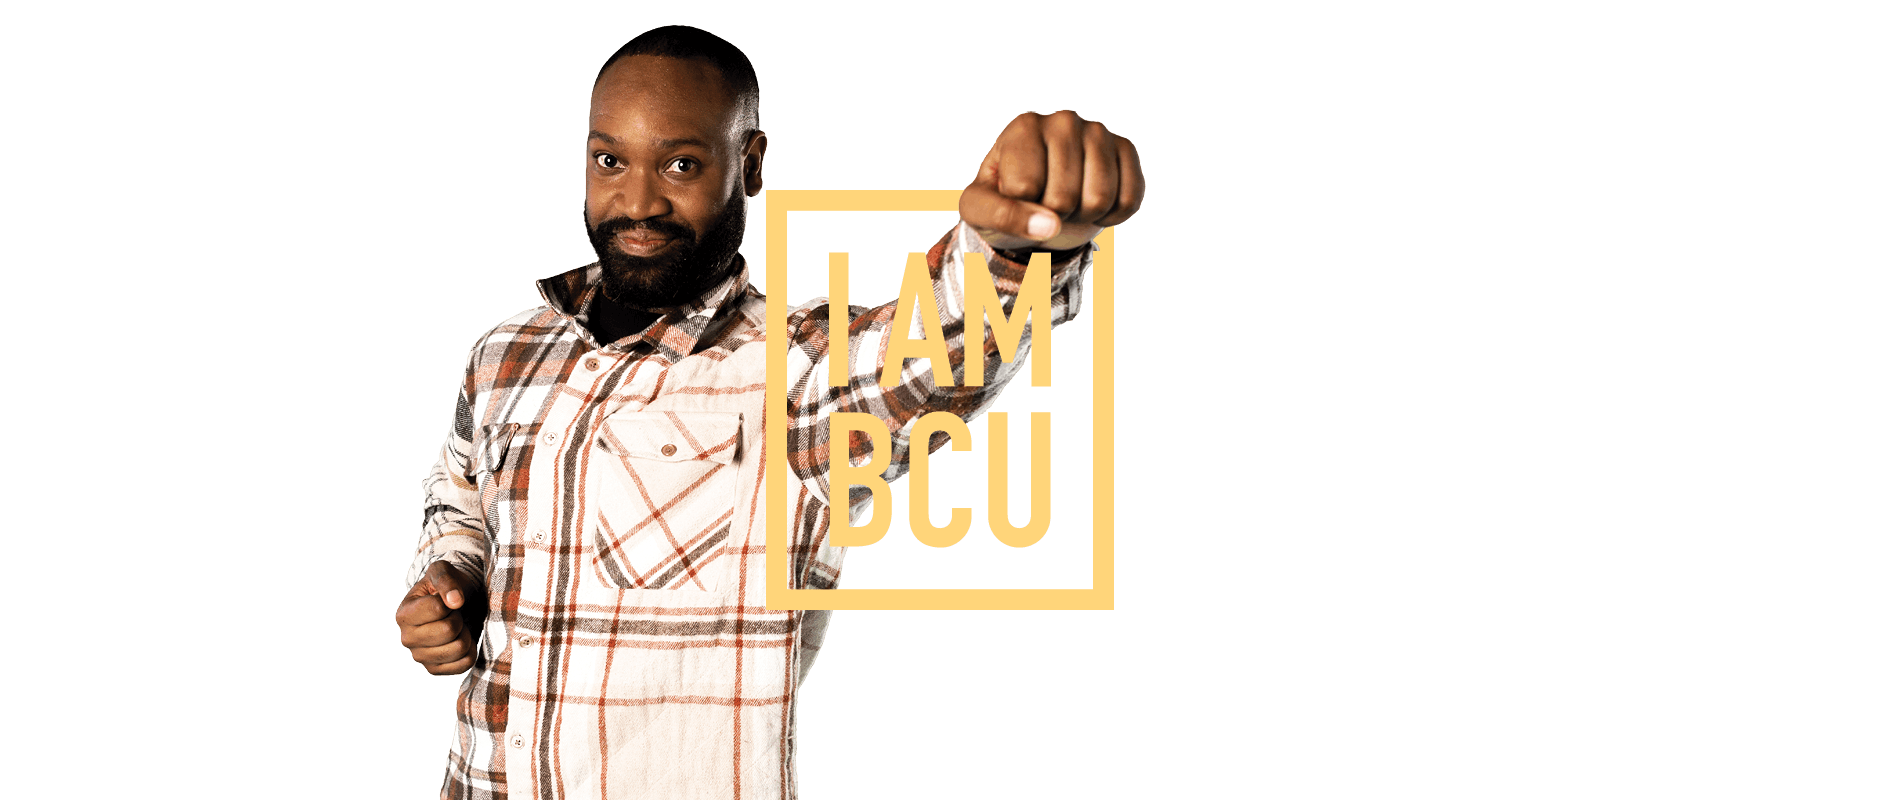 Iuri punches through I am BCU logo